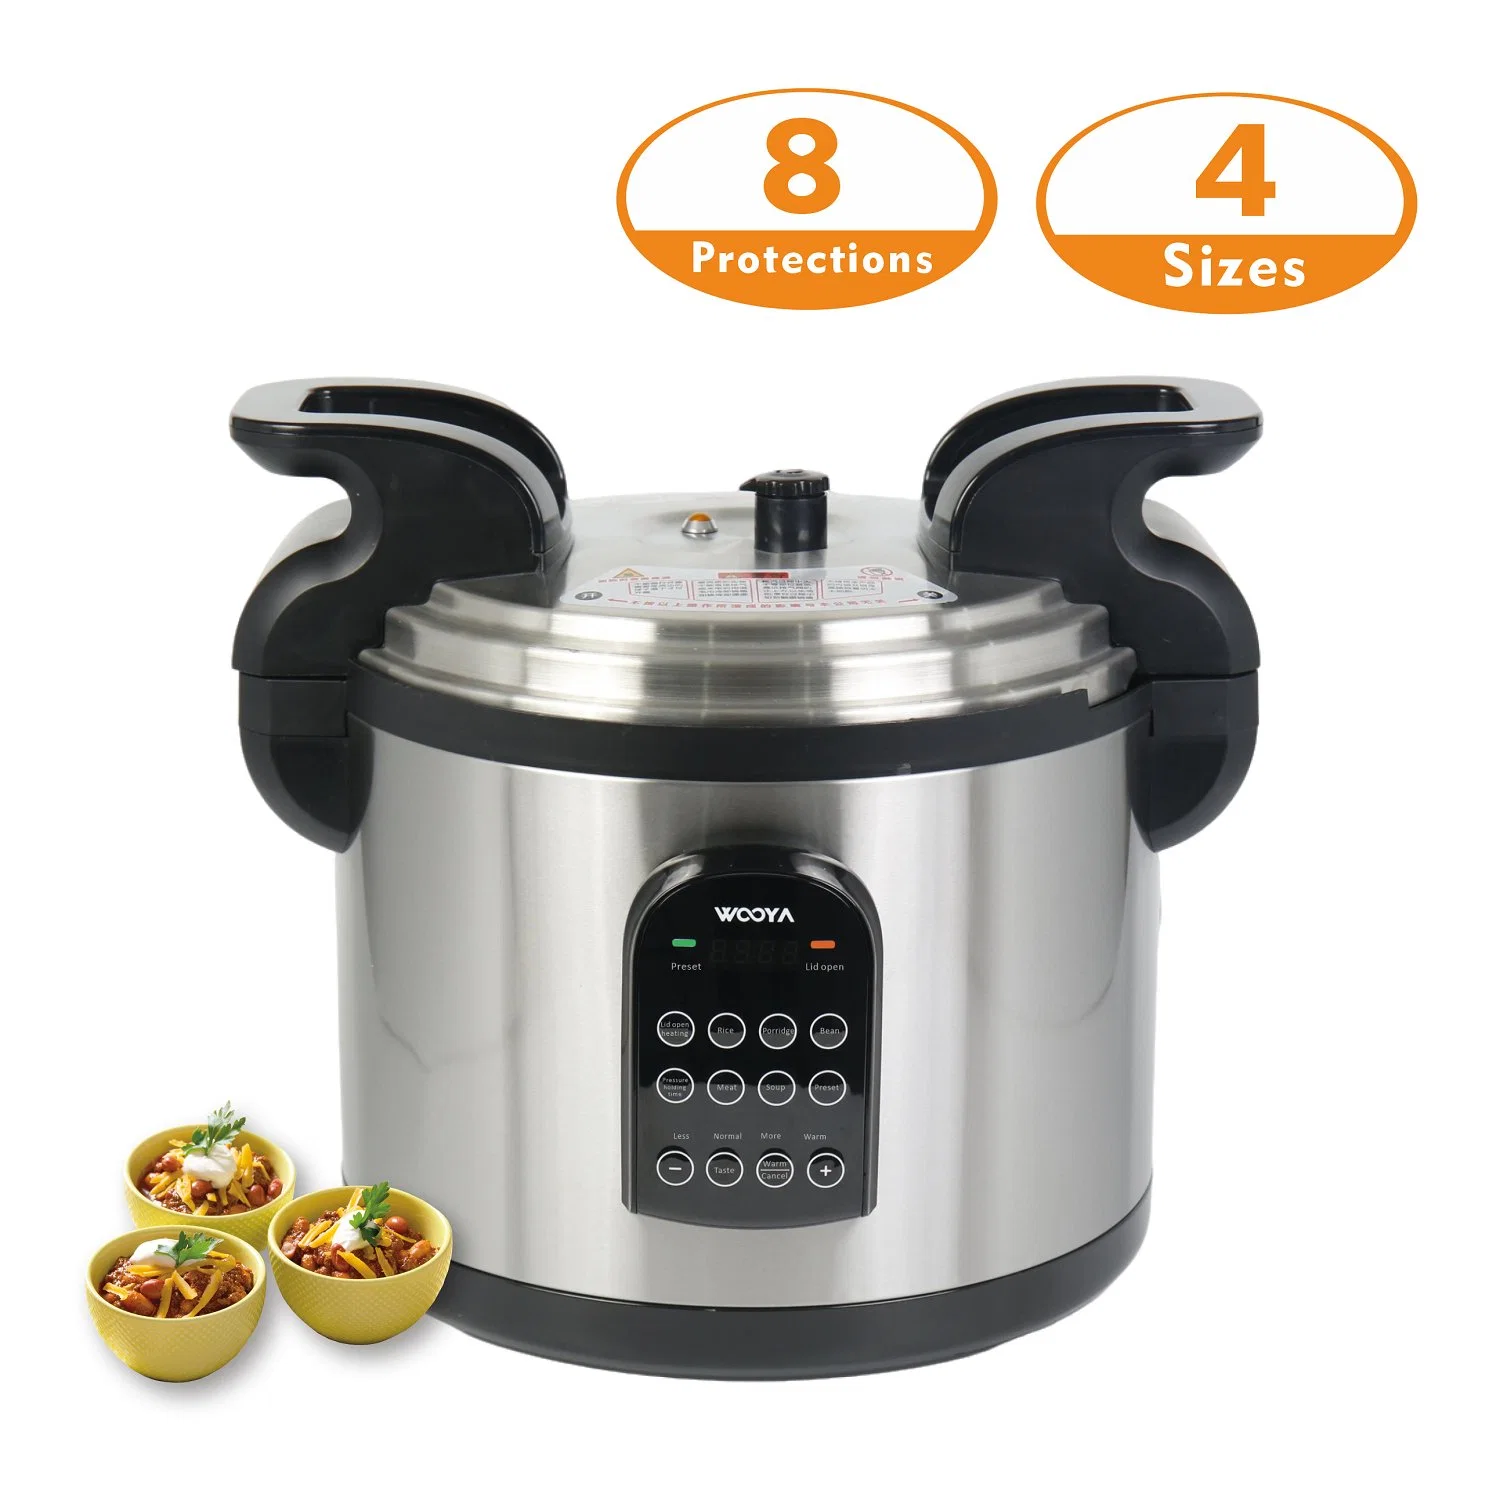 Cocotte-minute Horeca avec 8 protections électriques pour une utilisation intensive en cuisine.